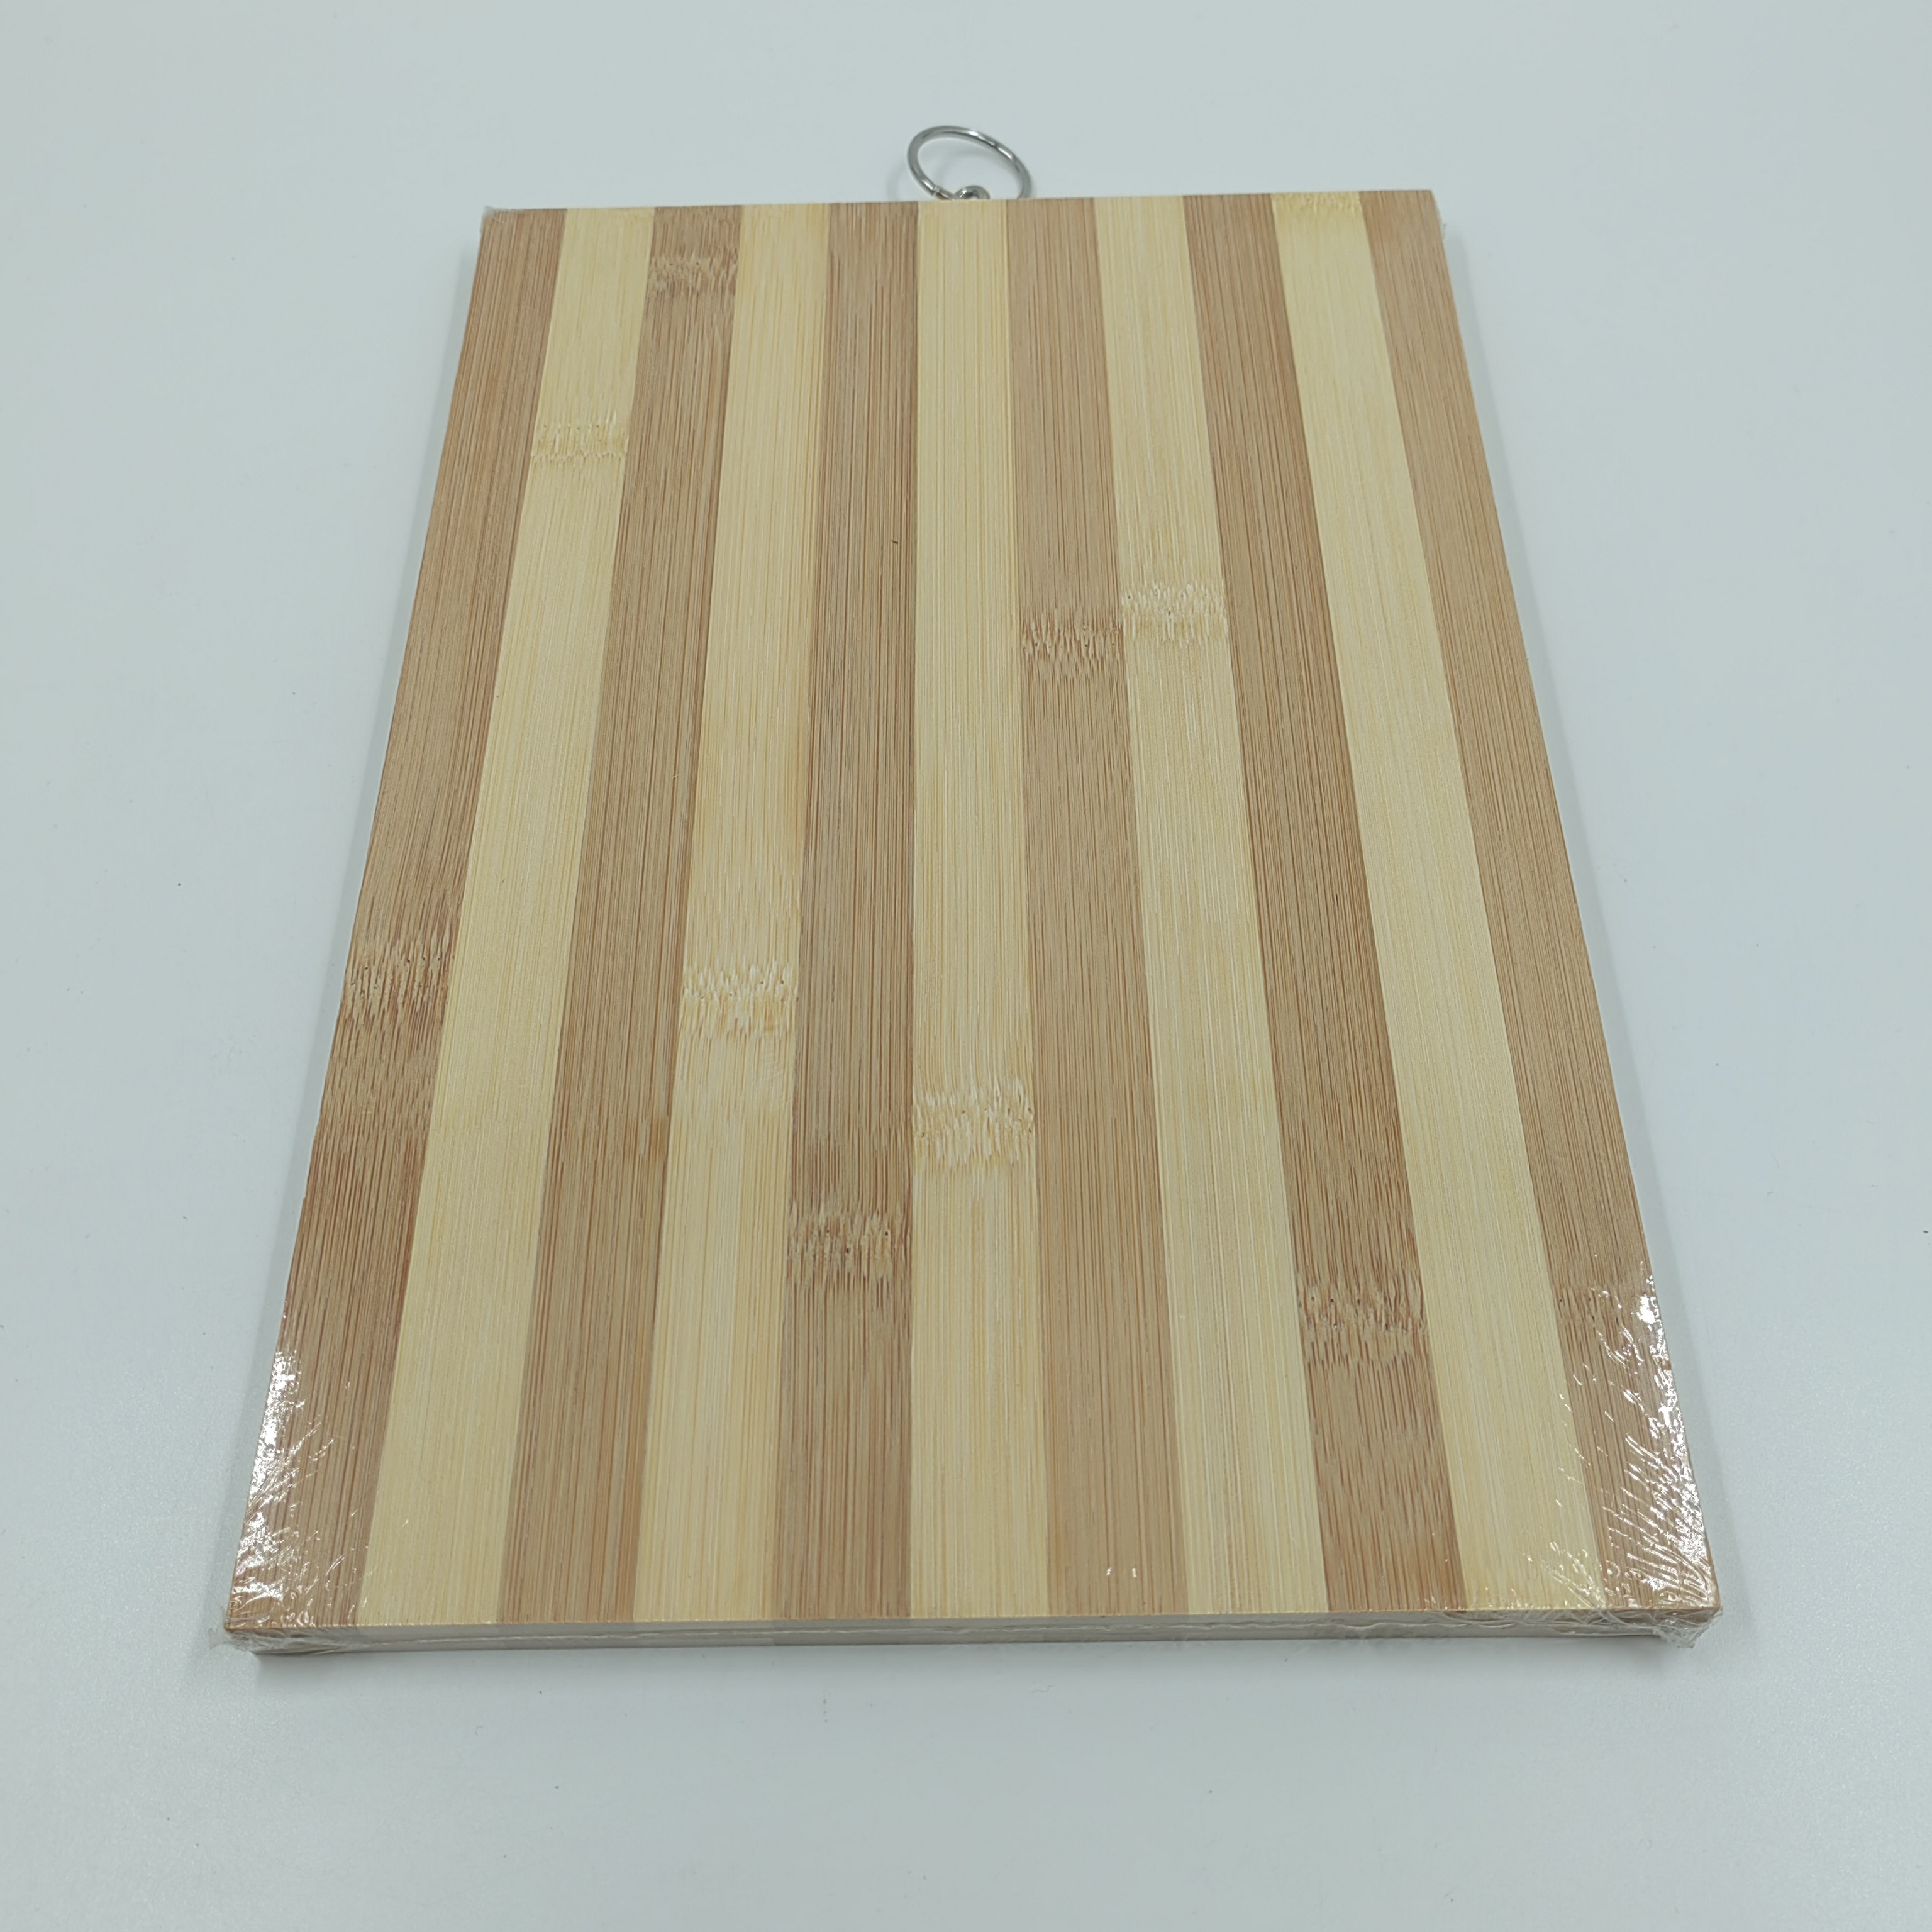 菜板/砧板/竹木菜板/厨房工具/碳化菜板/碳化竹砧板细节图